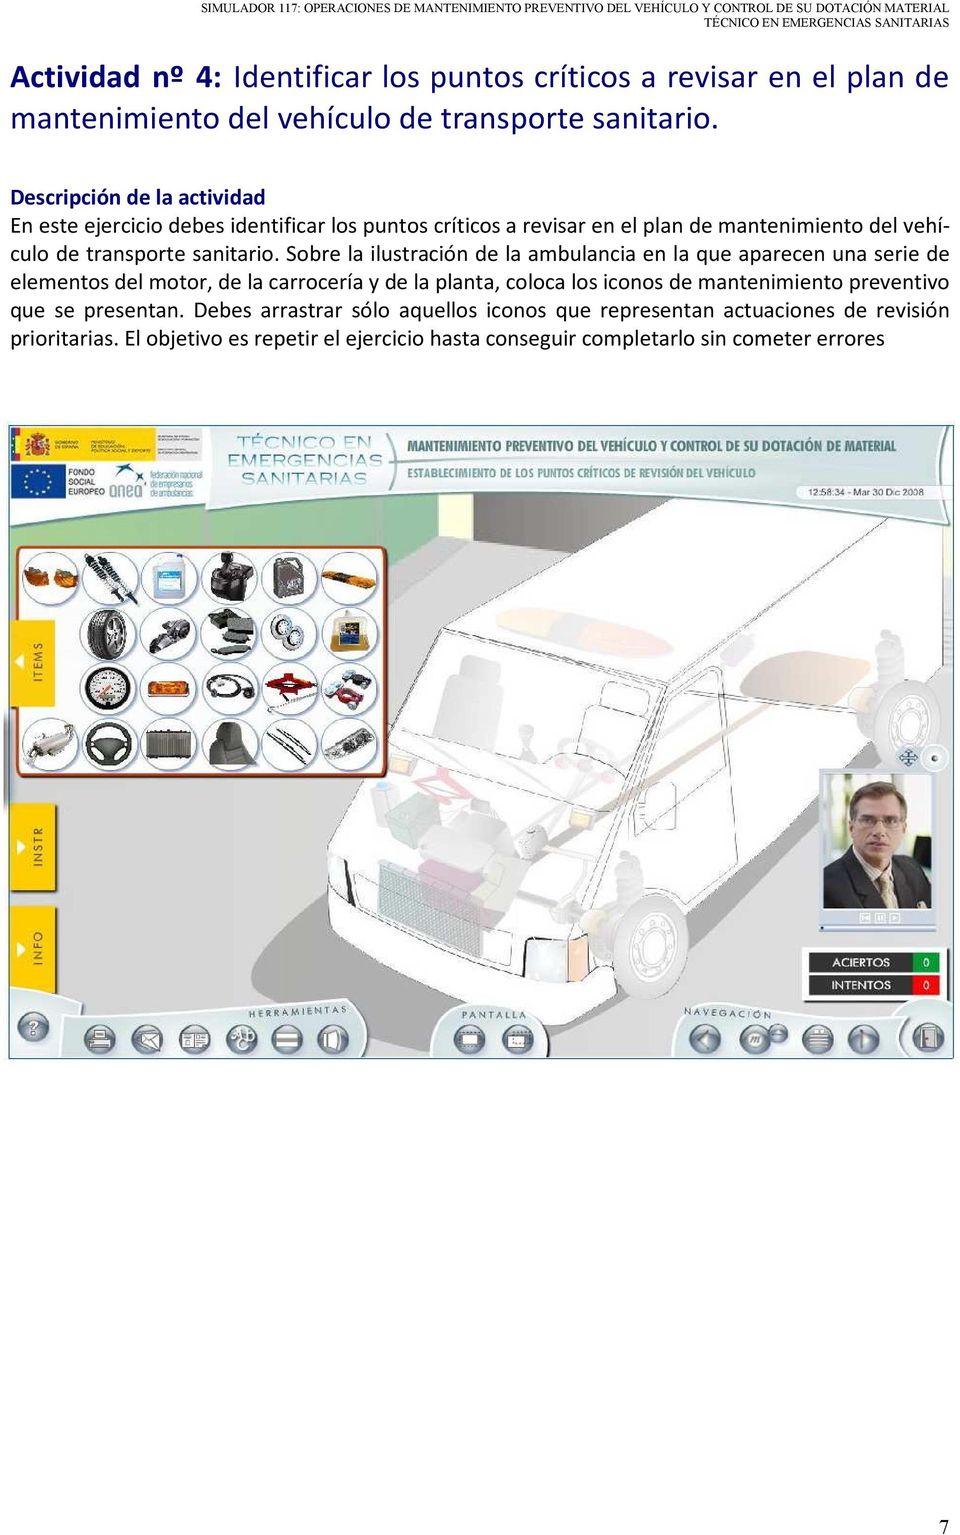 Sobre la ilustración de la ambulancia en la que aparecen una serie de elementos del motor, de la carrocería y de la planta, coloca los iconos de